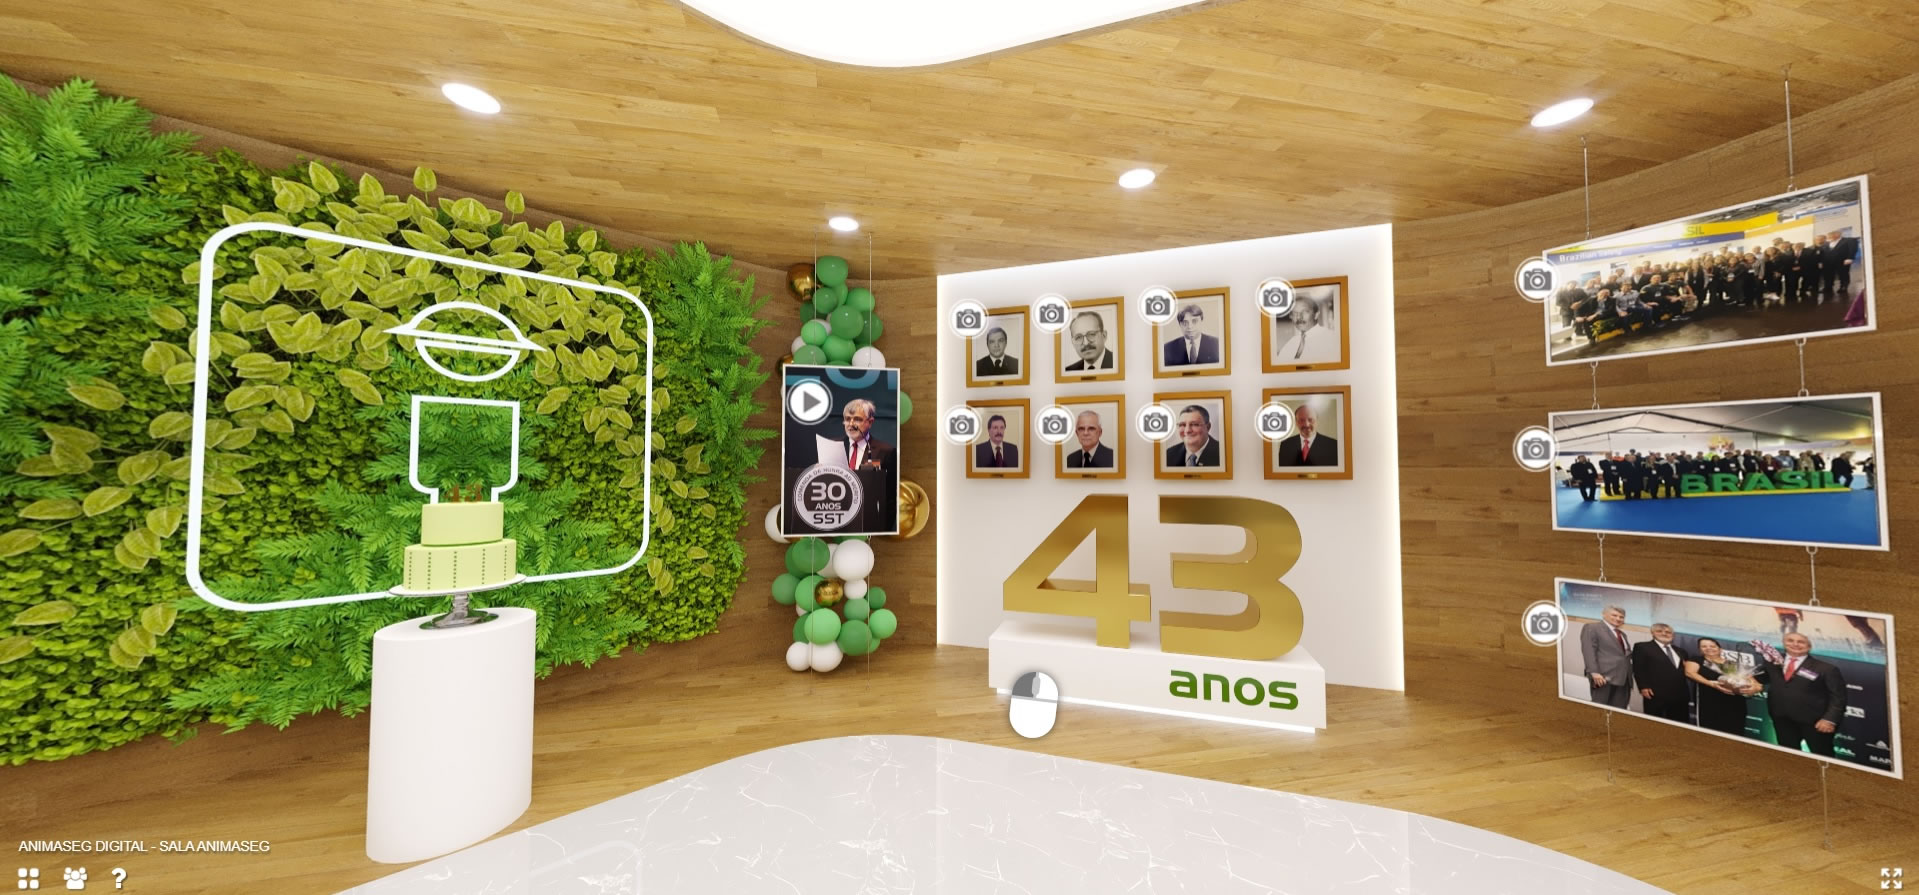 Para comemorar seus 43 anos, associação apresenta o Espaço Animaseg Digital 360